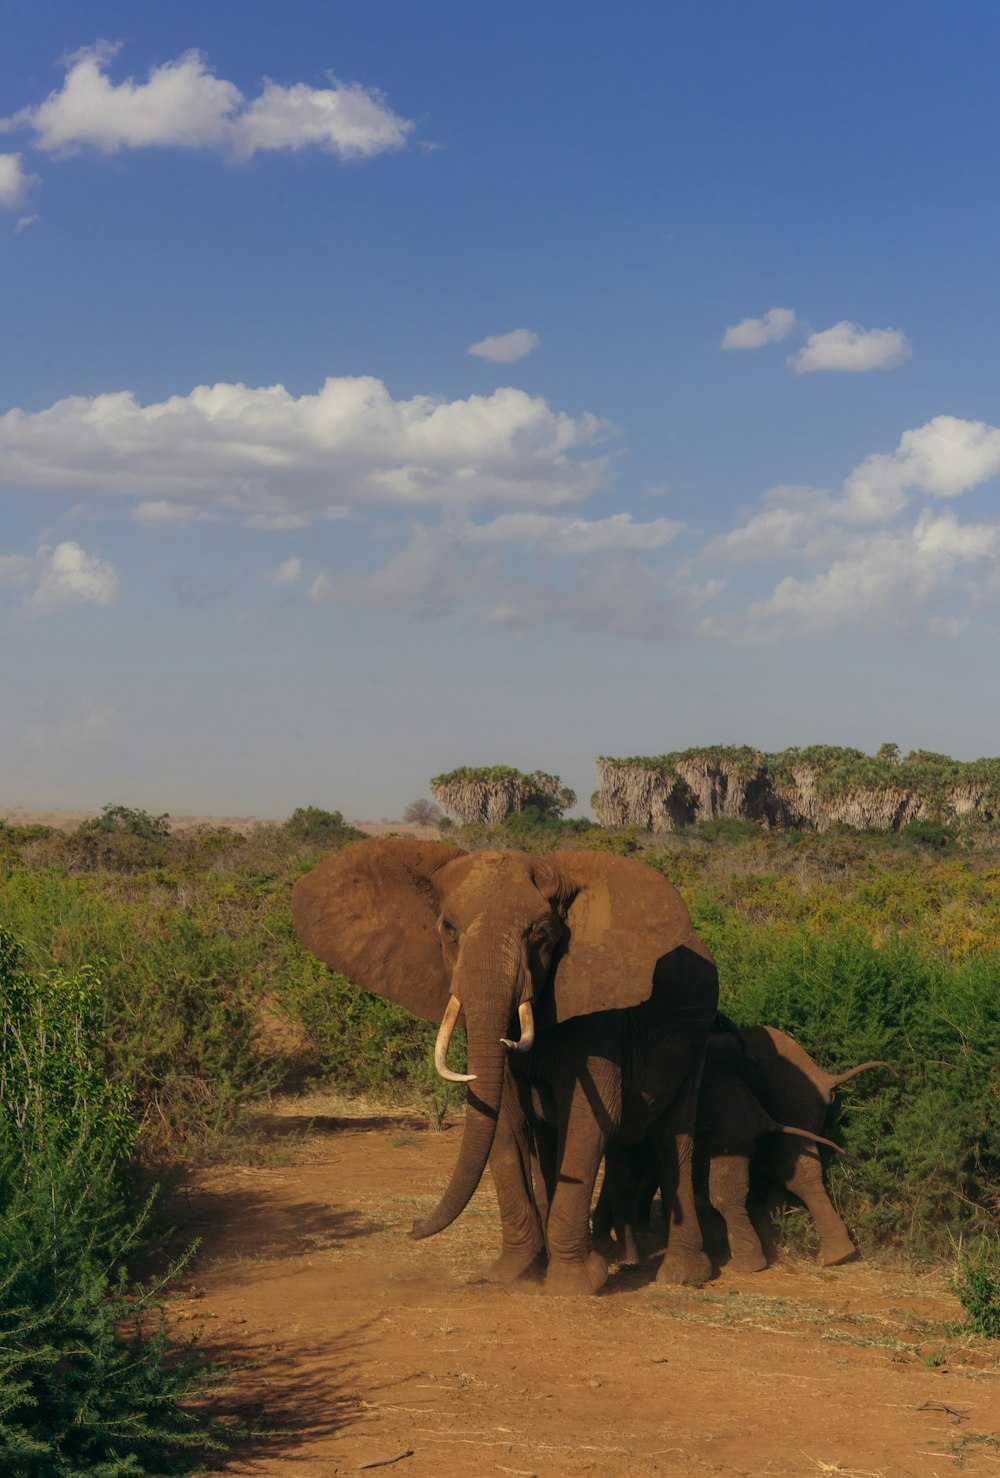 a herd of elephants walking across a dirt road